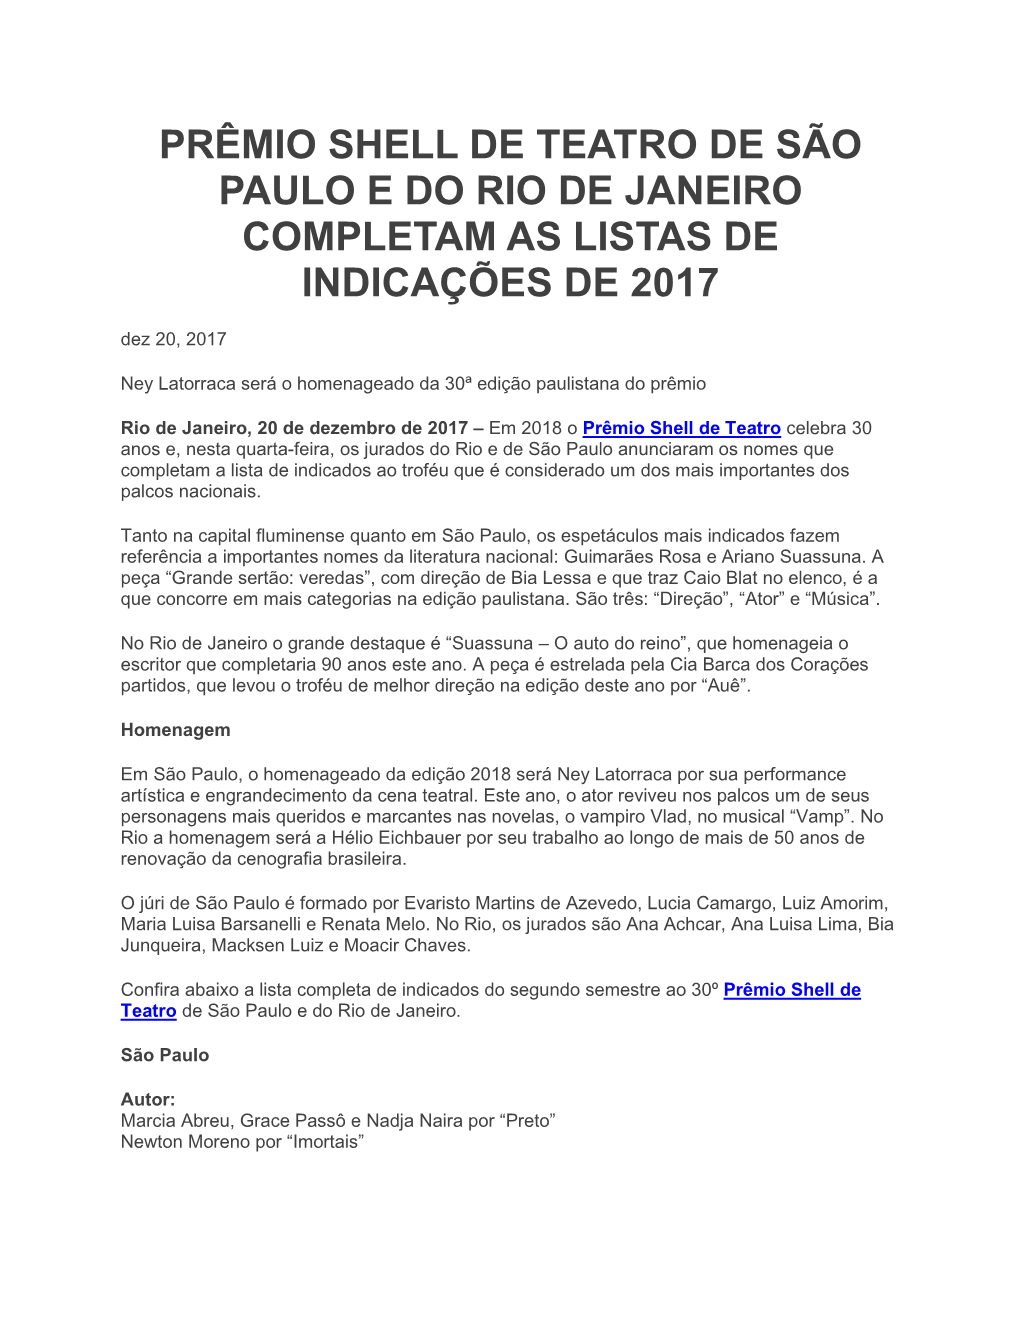 PRÊMIO SHELL DE TEATRO DE SÃO PAULO E DO RIO DE JANEIRO COMPLETAM AS LISTAS DE INDICAÇÕES DE 2017 Dez 20, 2017